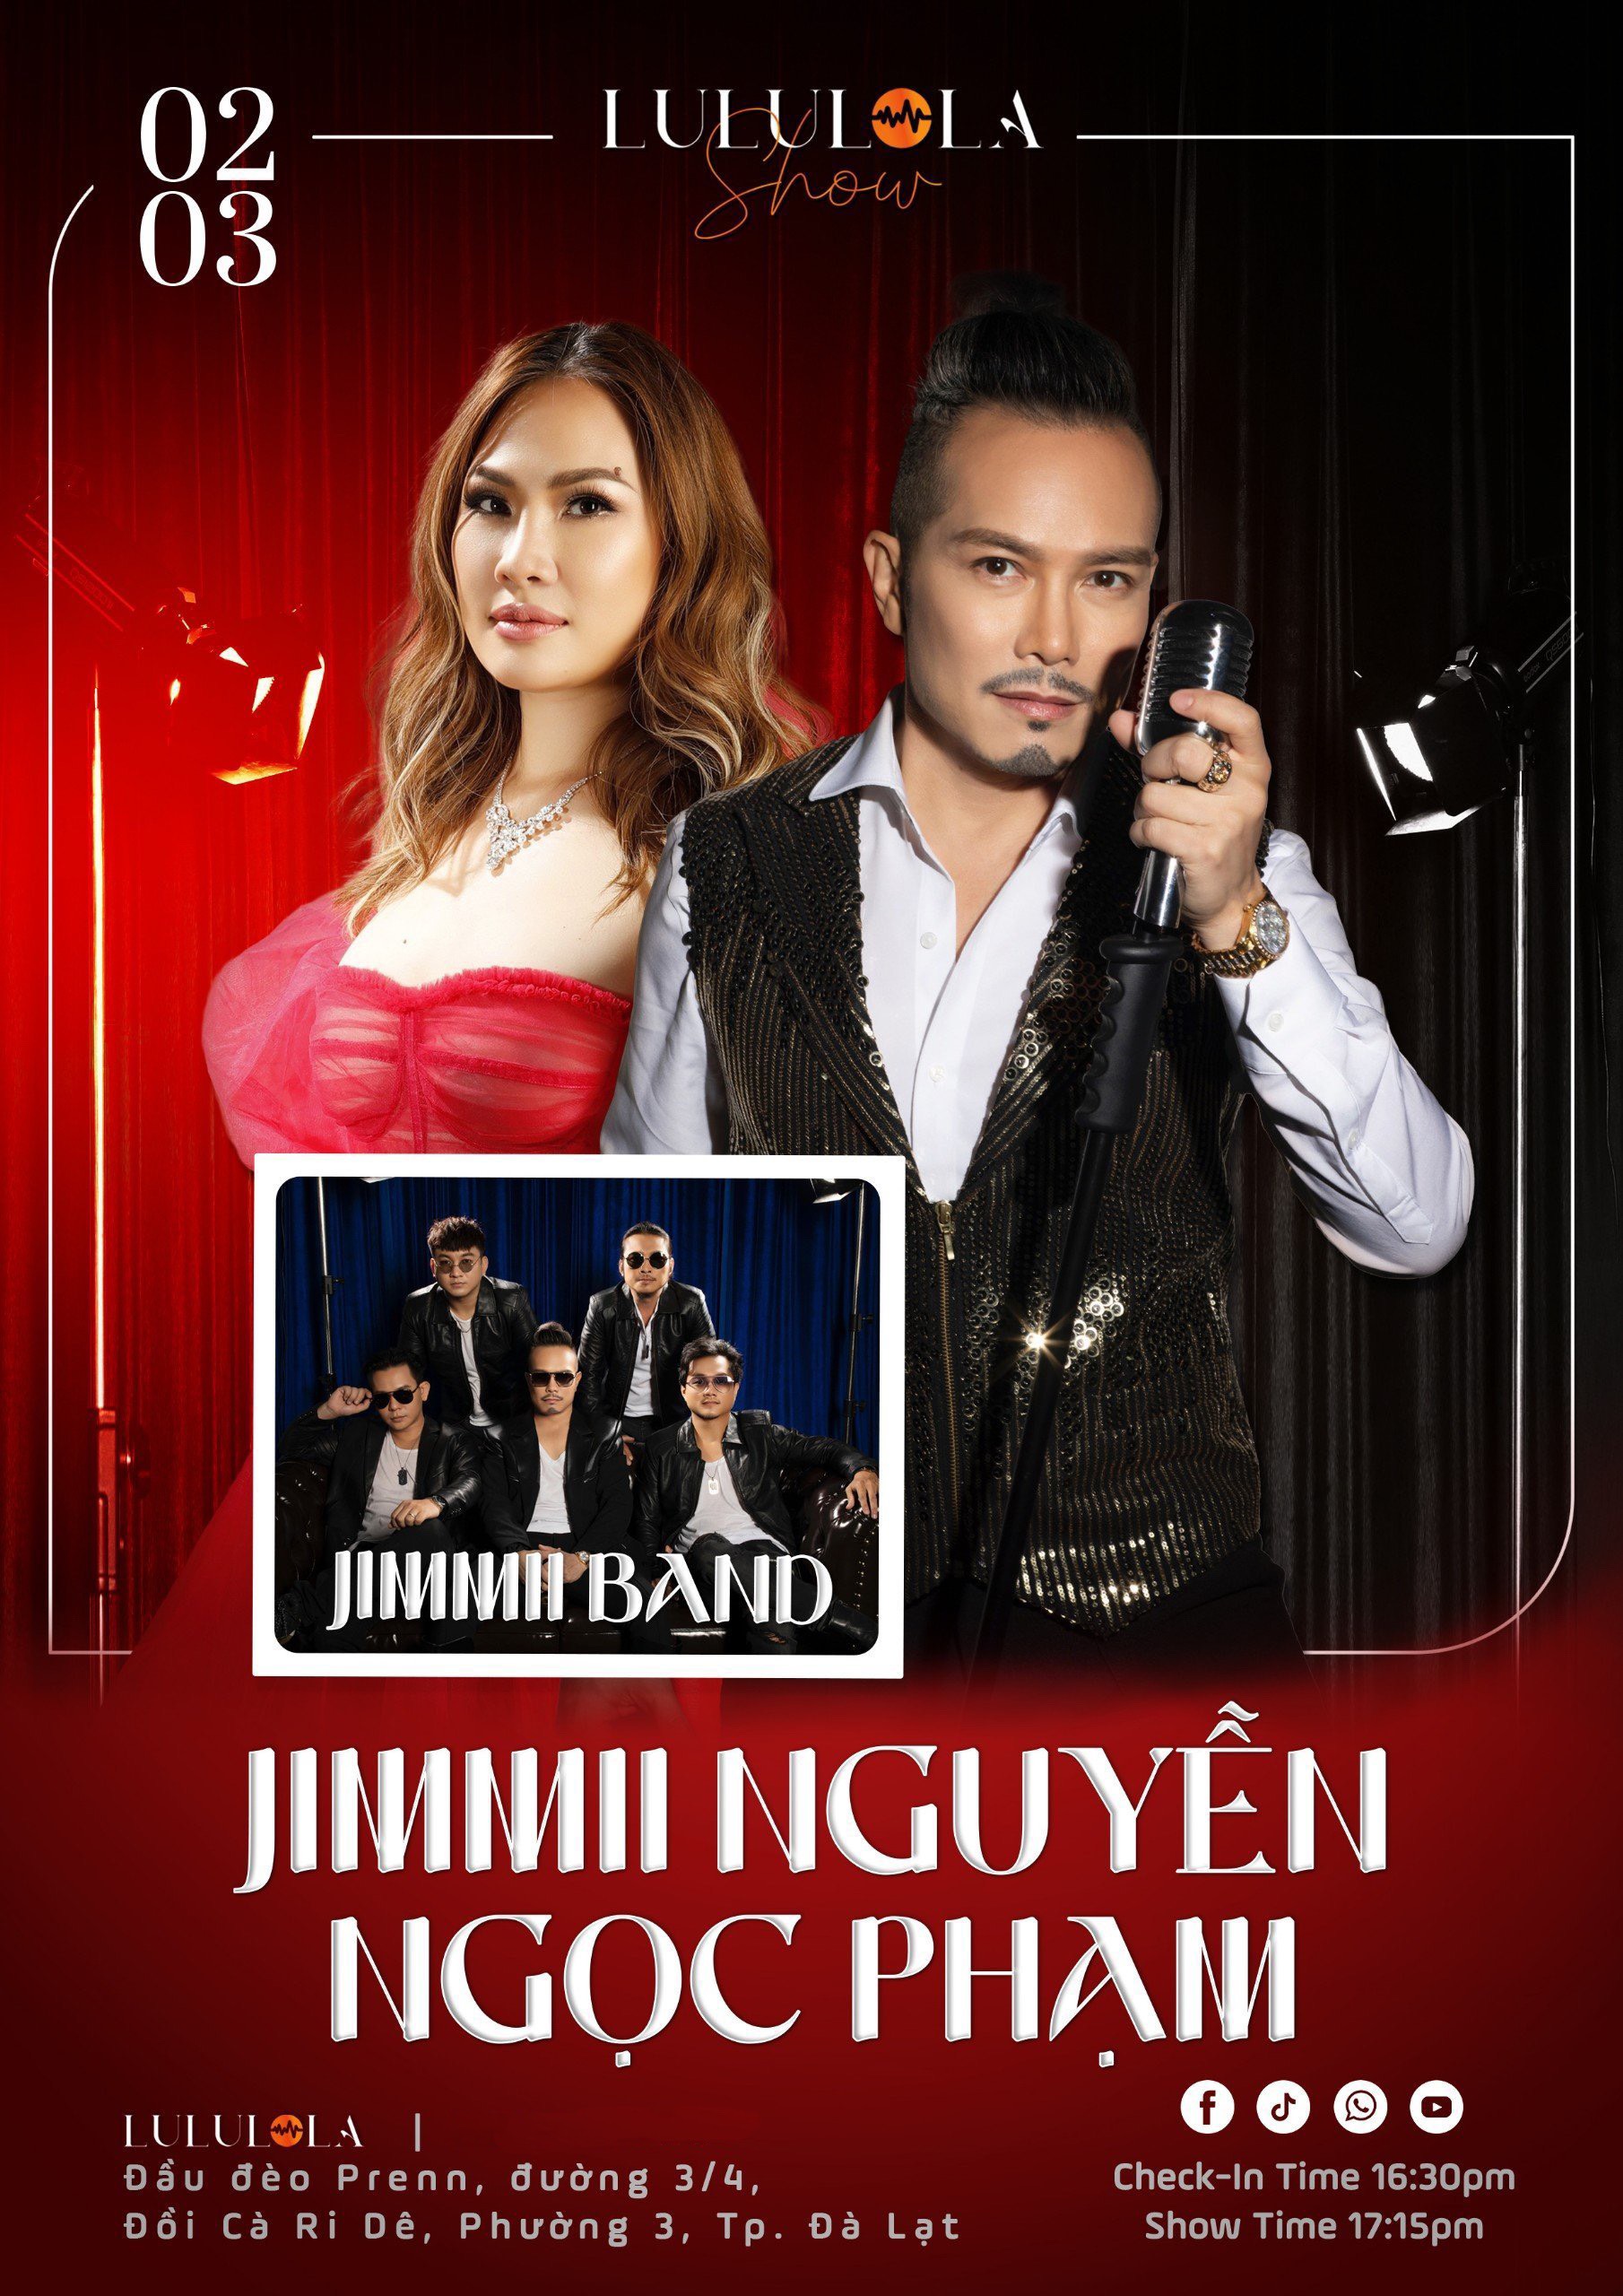 thông tin show Jimmii Nguyễn lululola show